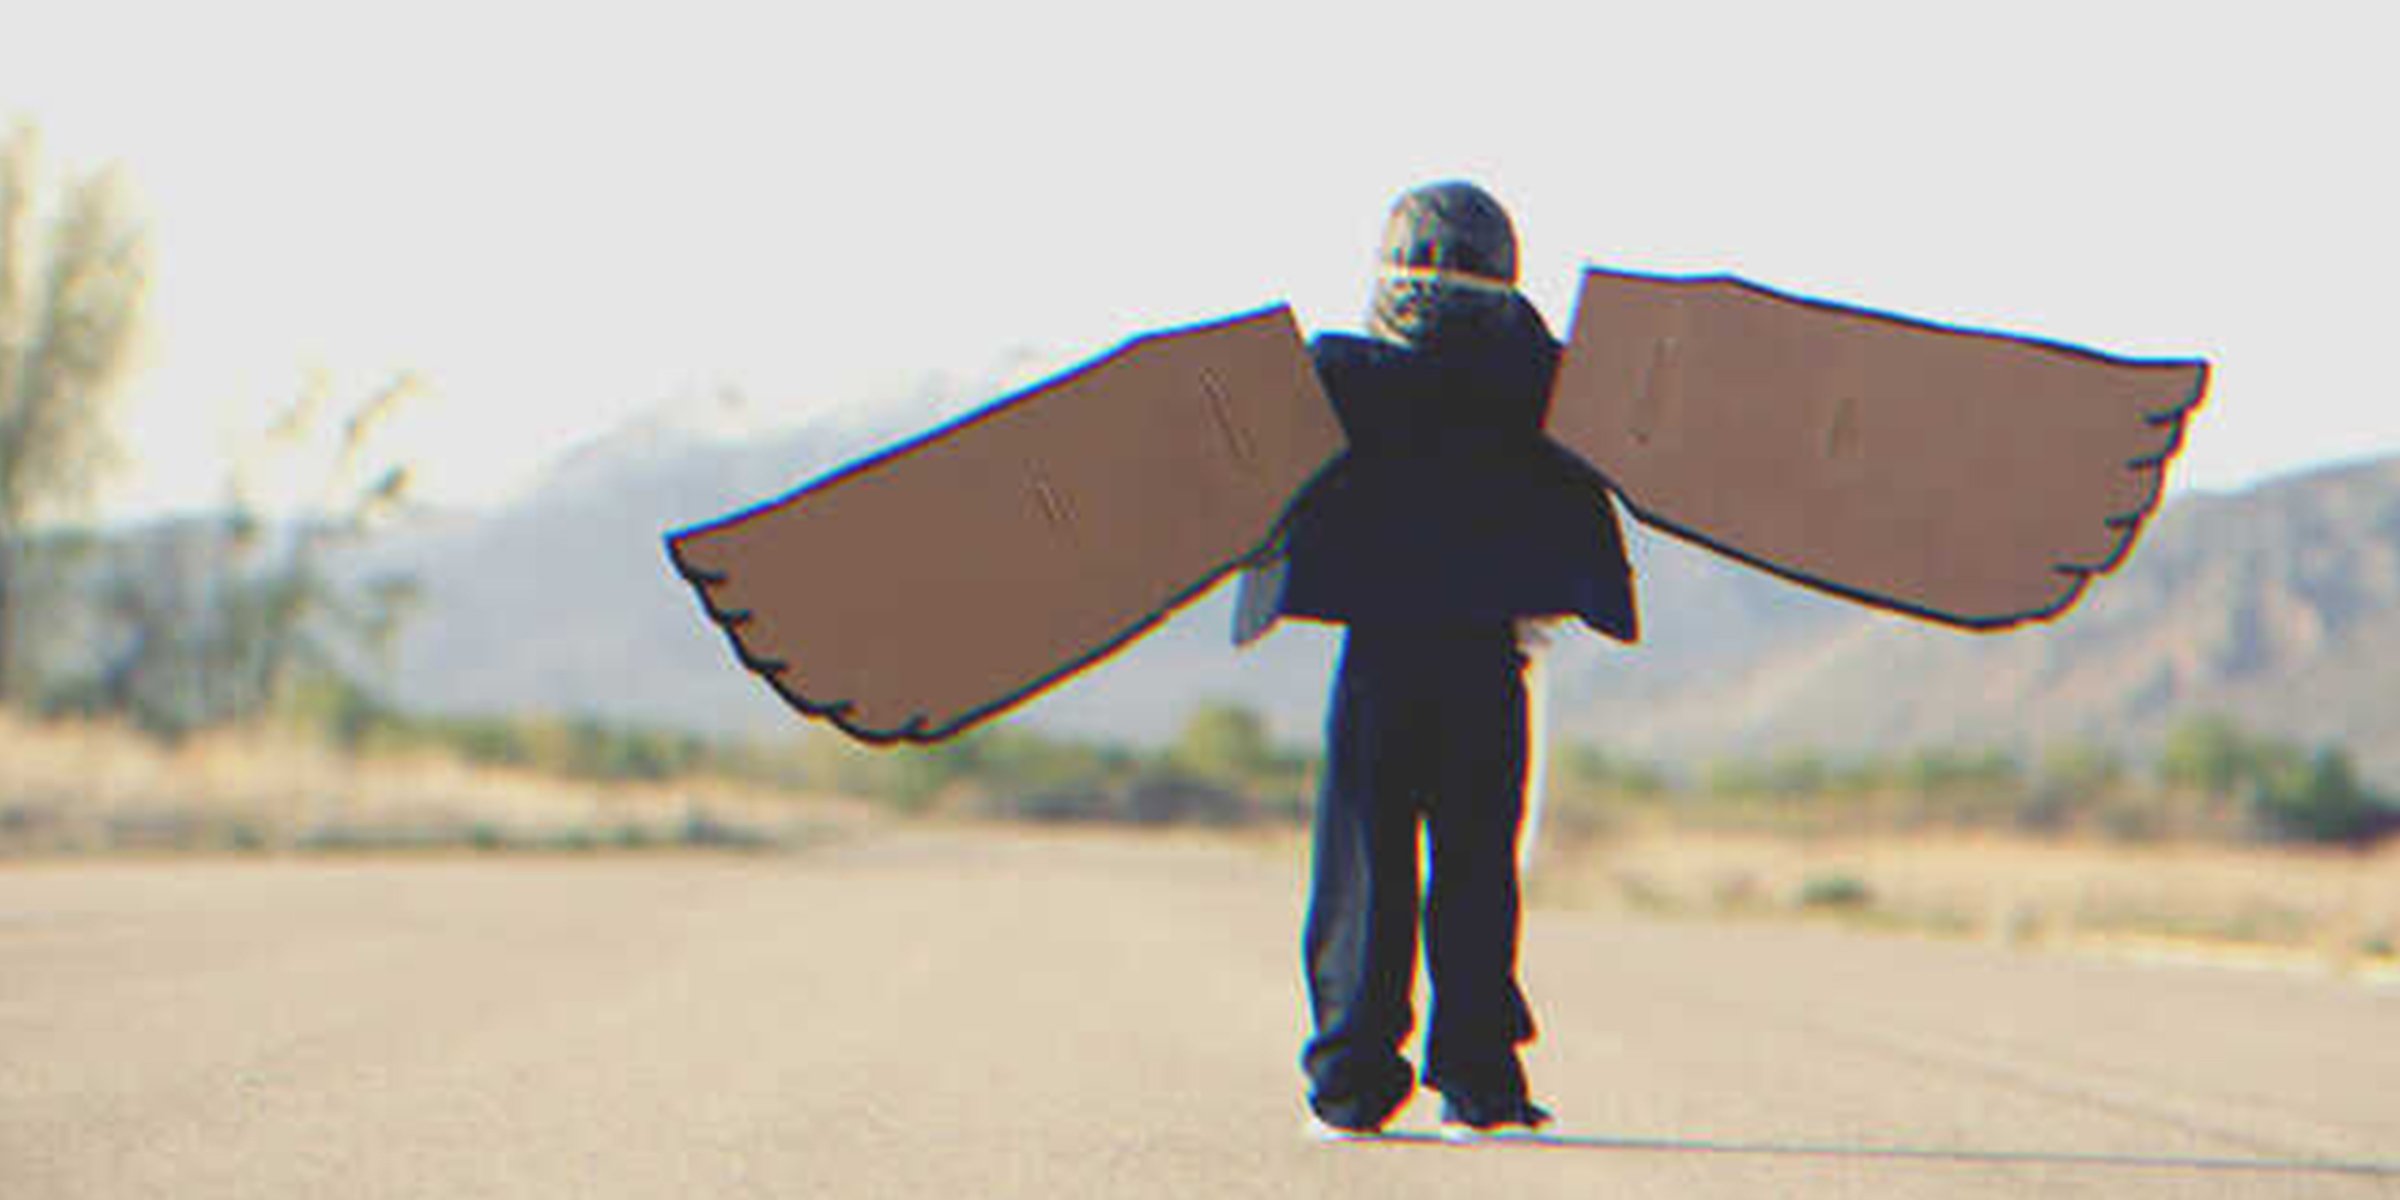 Kind mit selbstgebastelten Flügeln | Quelle: Shutterstock